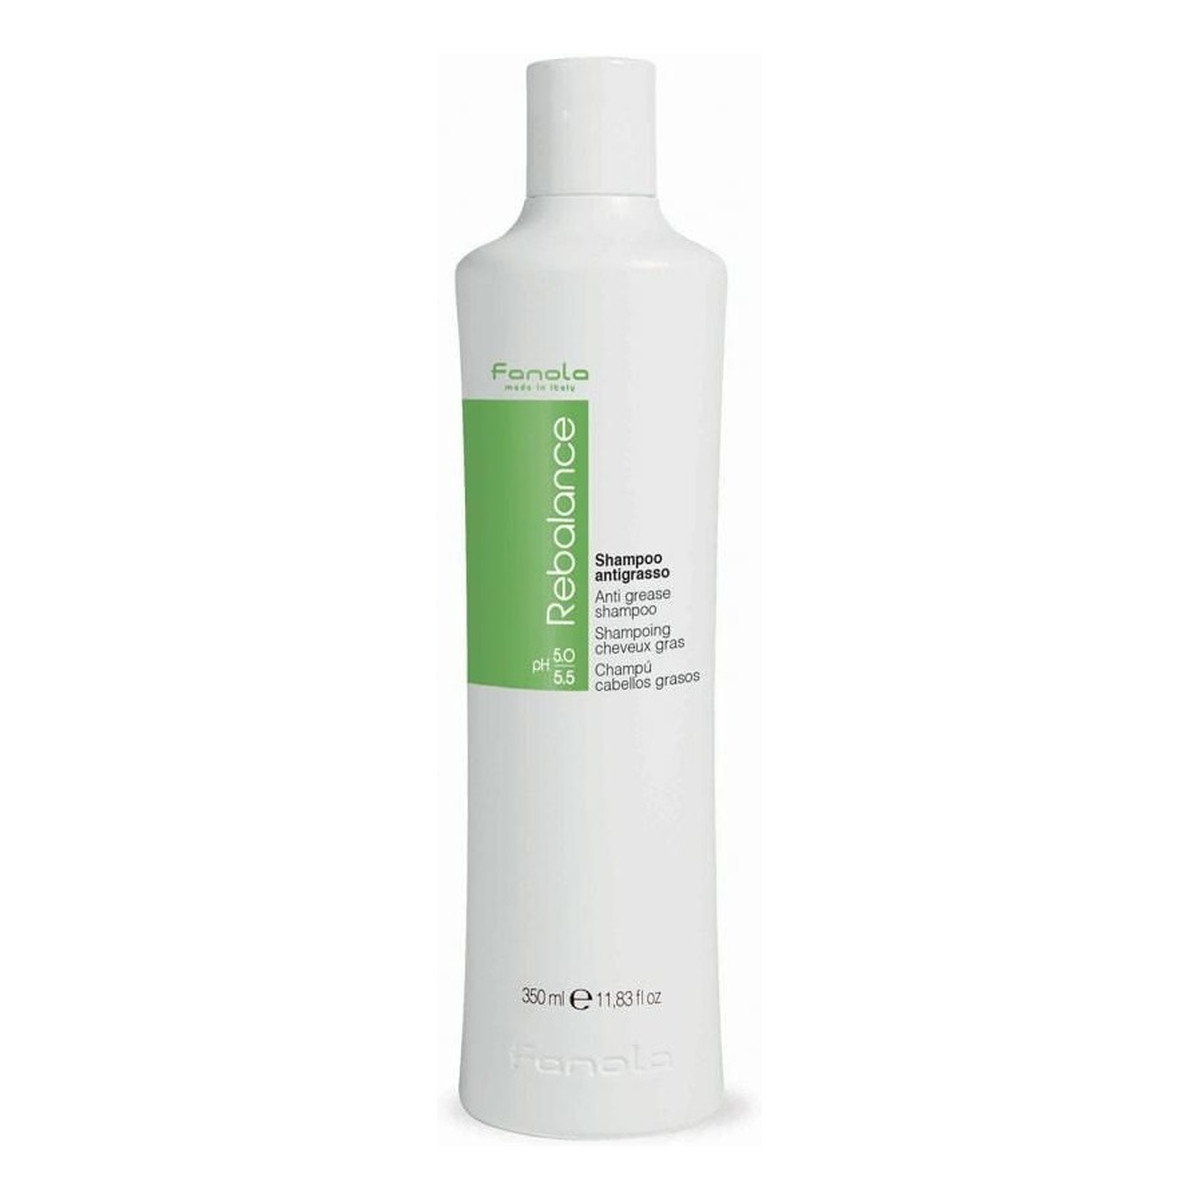 Fanola Rebalance anti-grease shampoo oczyszczający szampon do włosów przetłuszczających się 350ml